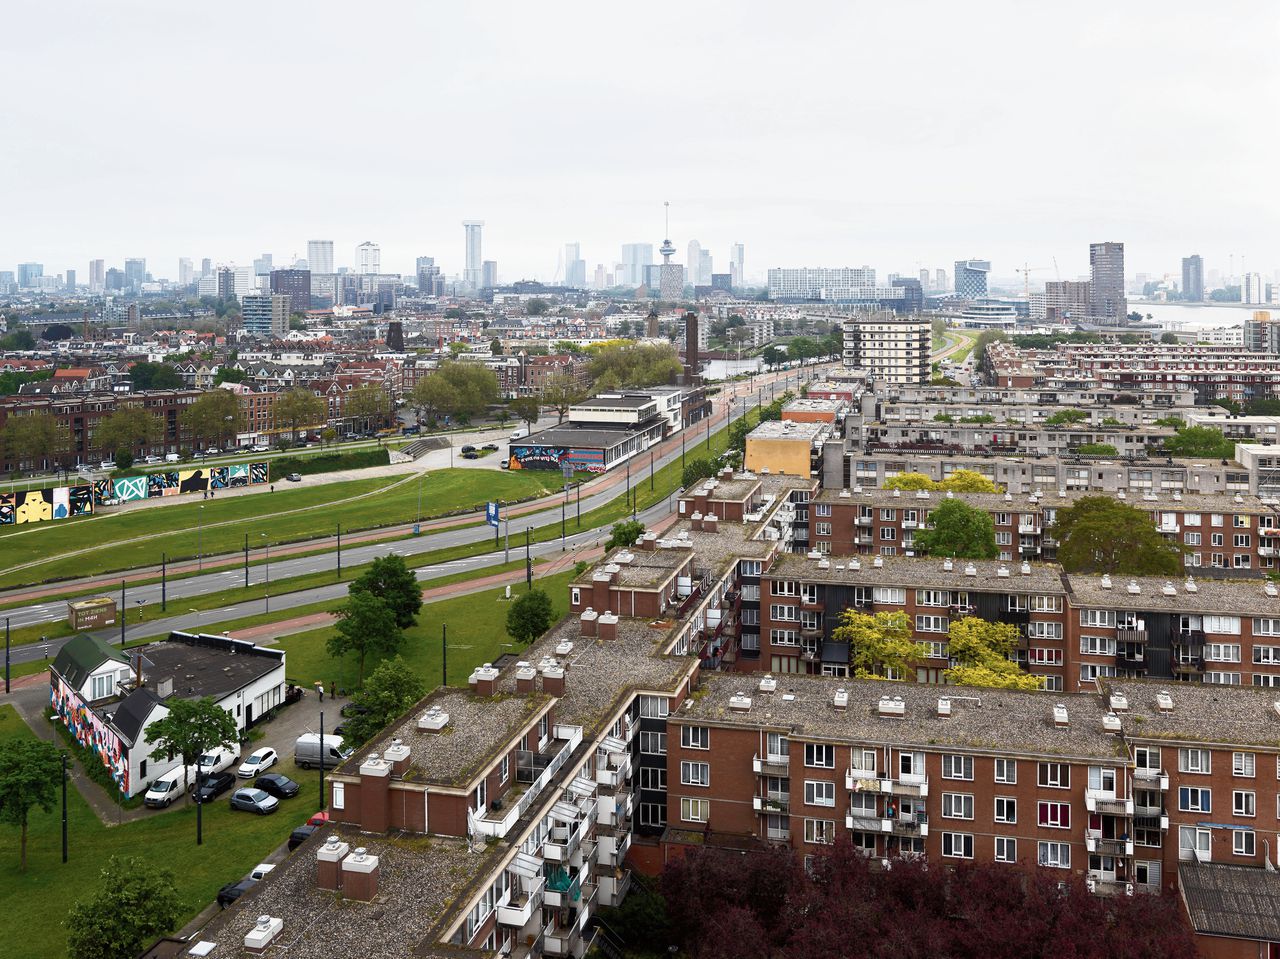 De wijk Schiemond in Rotterdam-West, met rechtsboven de Nieuwe Maas en links het Dakpark.